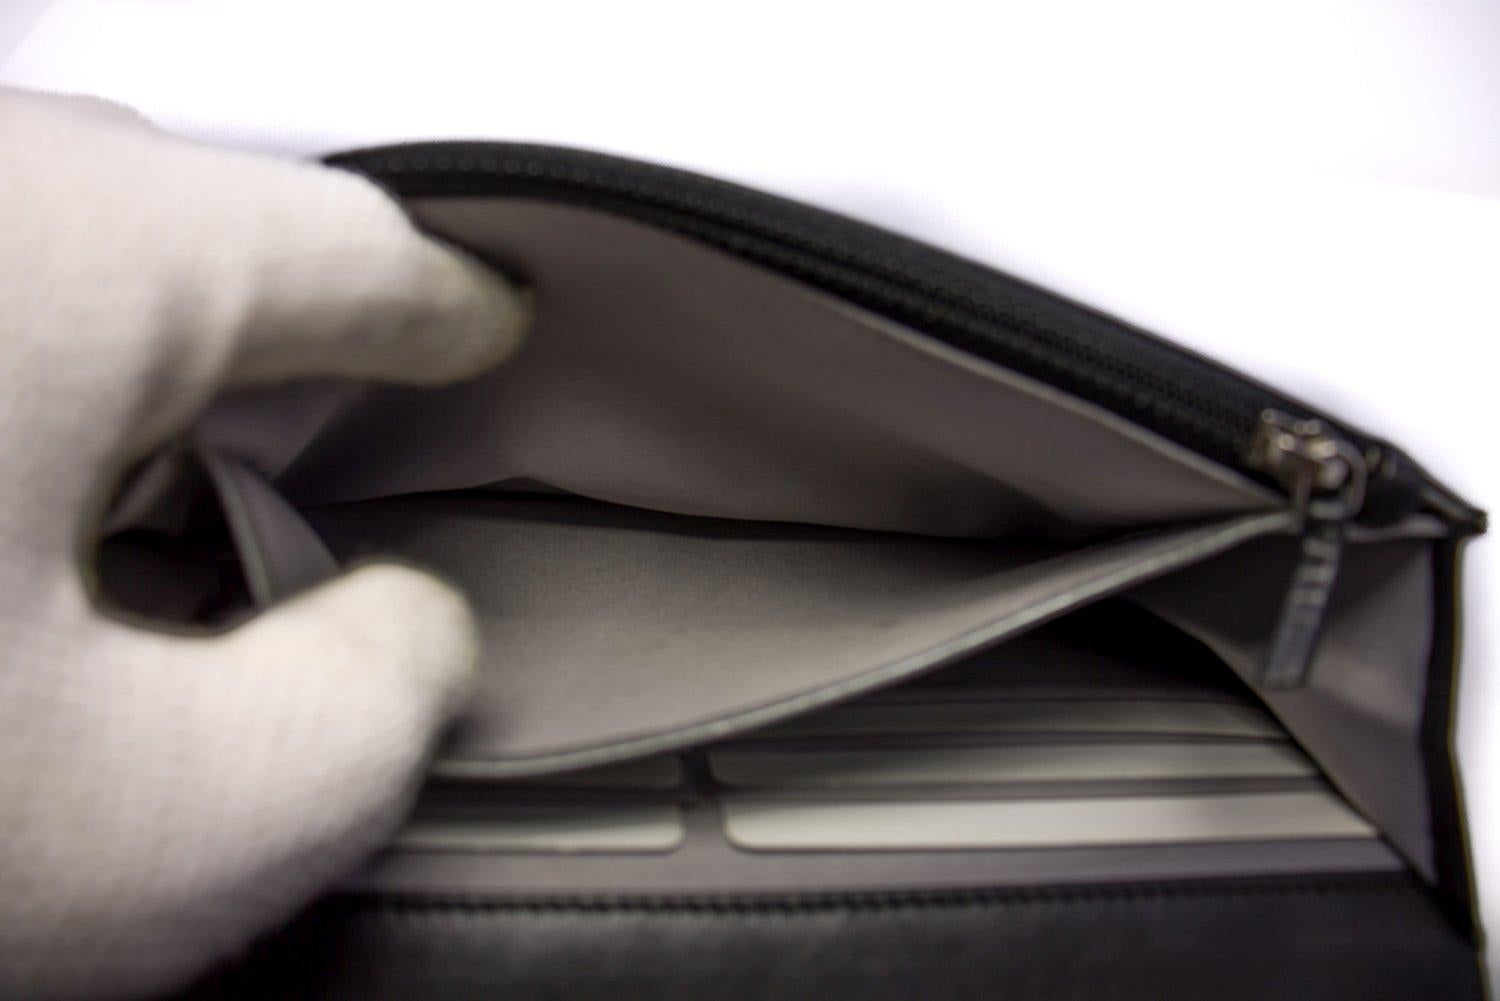 CHANEL Black Camellia Embossed WOC Wallet On Chain Shoulder Bag SV 13